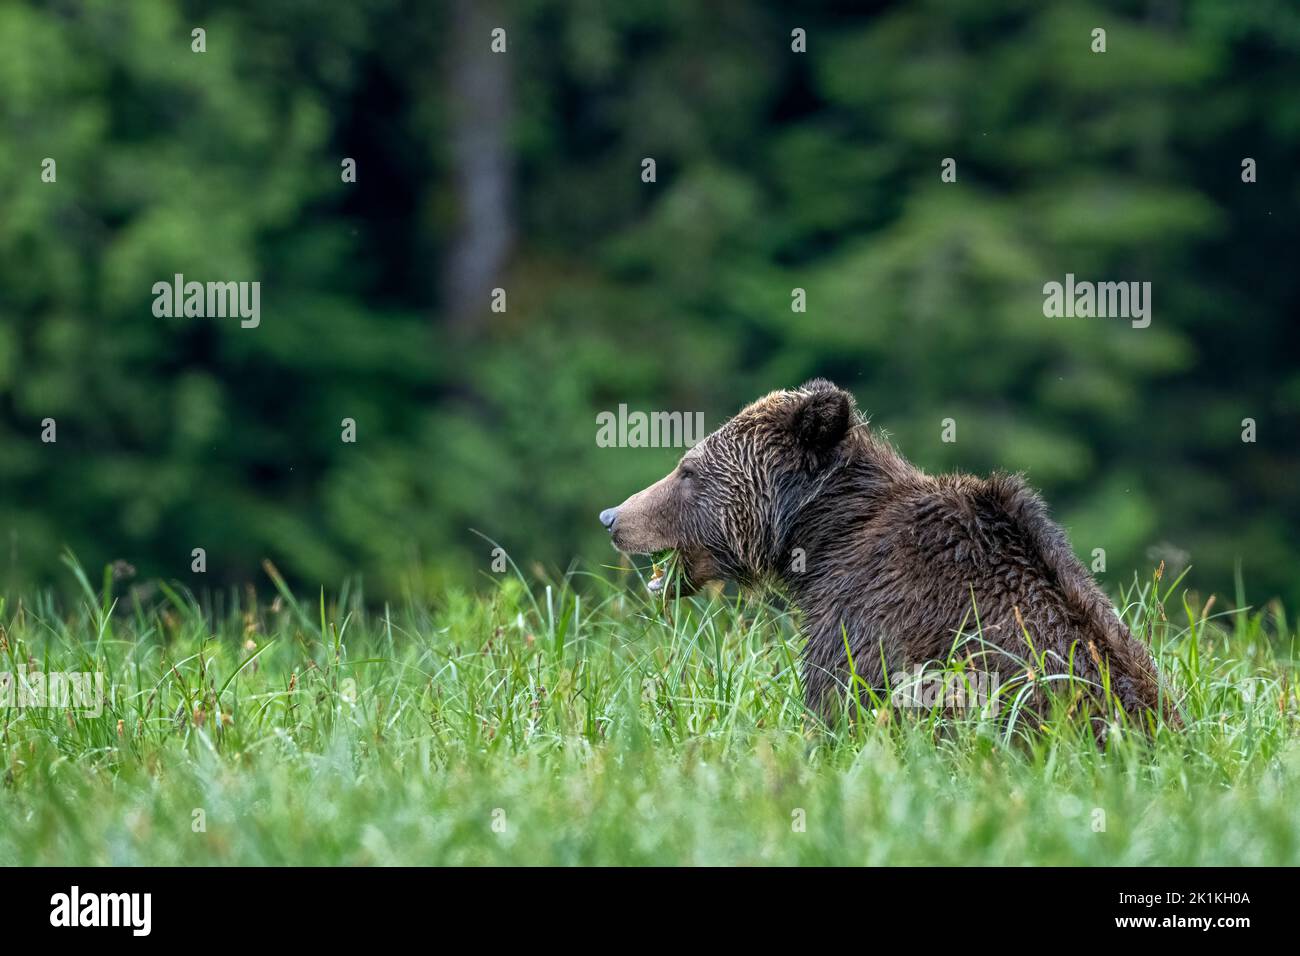 Un orso grizzly femmina si nutre di ricche erbe di sedano nella foresta pluviale del Grande orso della Colombia britannica, Canada Foto Stock